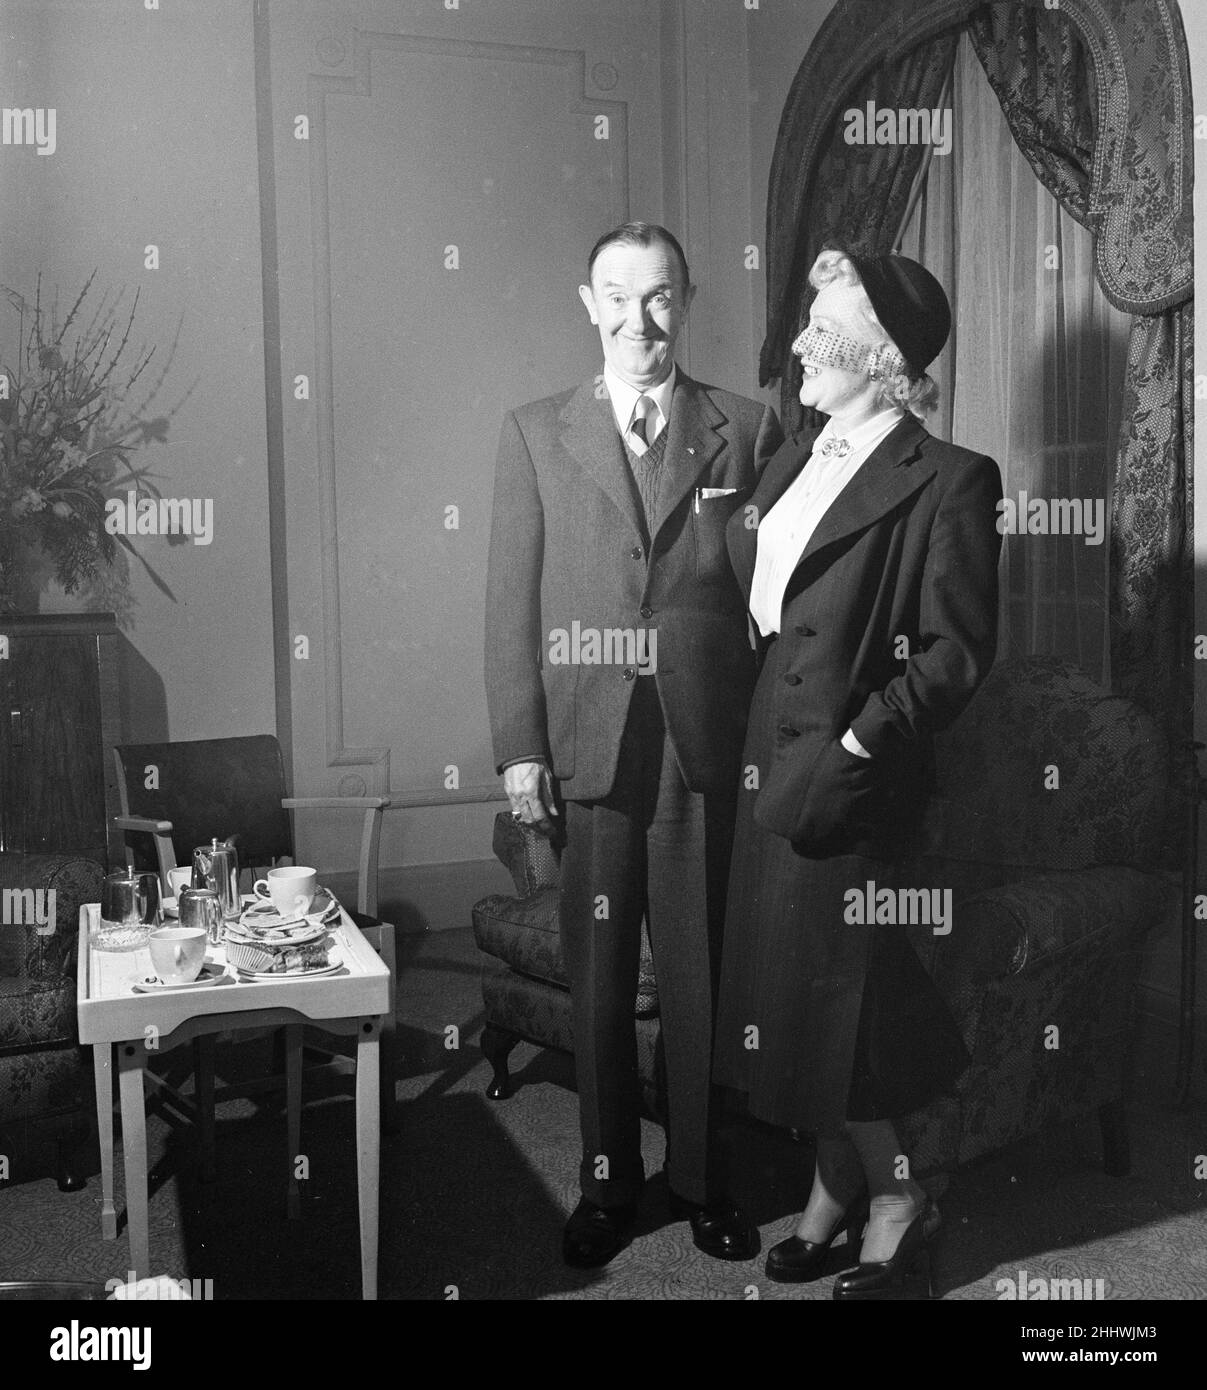 Stan Laurel und Oliver Hardy kamen am Montag (28th. Januar) in Großbritannien an und reisten mit dem RMS Queen Mary Ocean Liner zu einer 10-wöchigen Variety Tour durch die British Music Halls, im Bild von London, Dienstag, den 29th. Januar 1952. Unser Bild Zeigt ... Stan Laurel und seine Frau Ida Kitaeva Raphael. Stockfoto